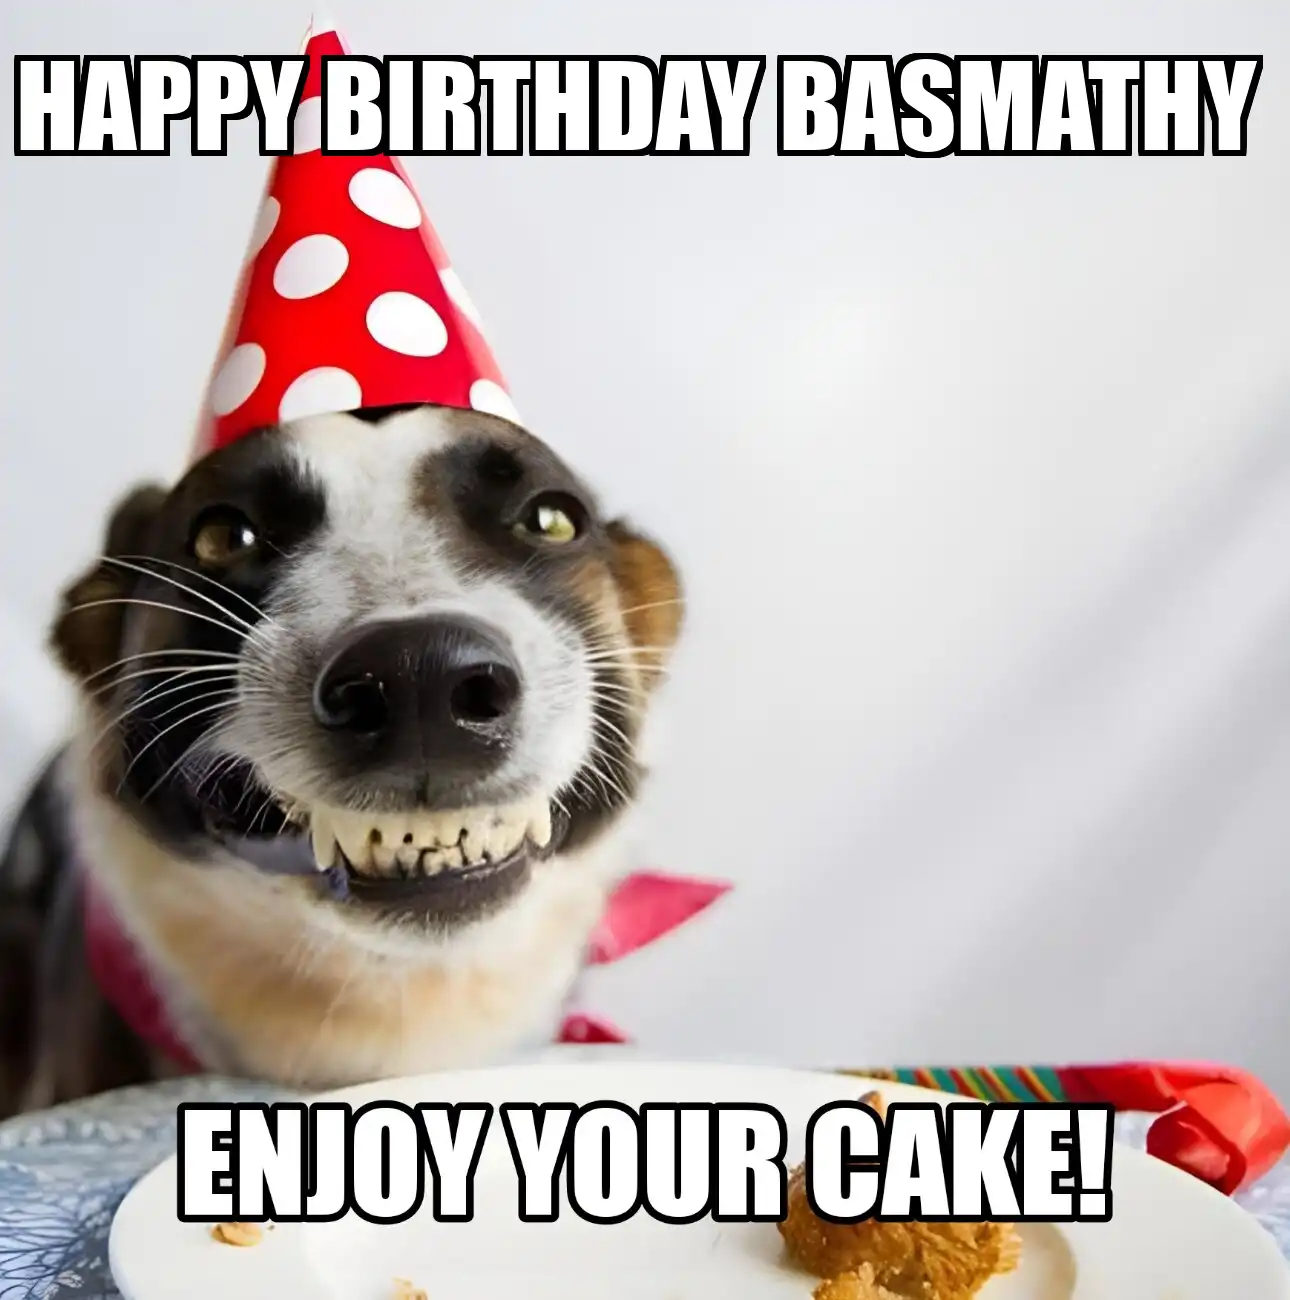 Happy Birthday Basmathy Enjoy Your Cake Dog Meme